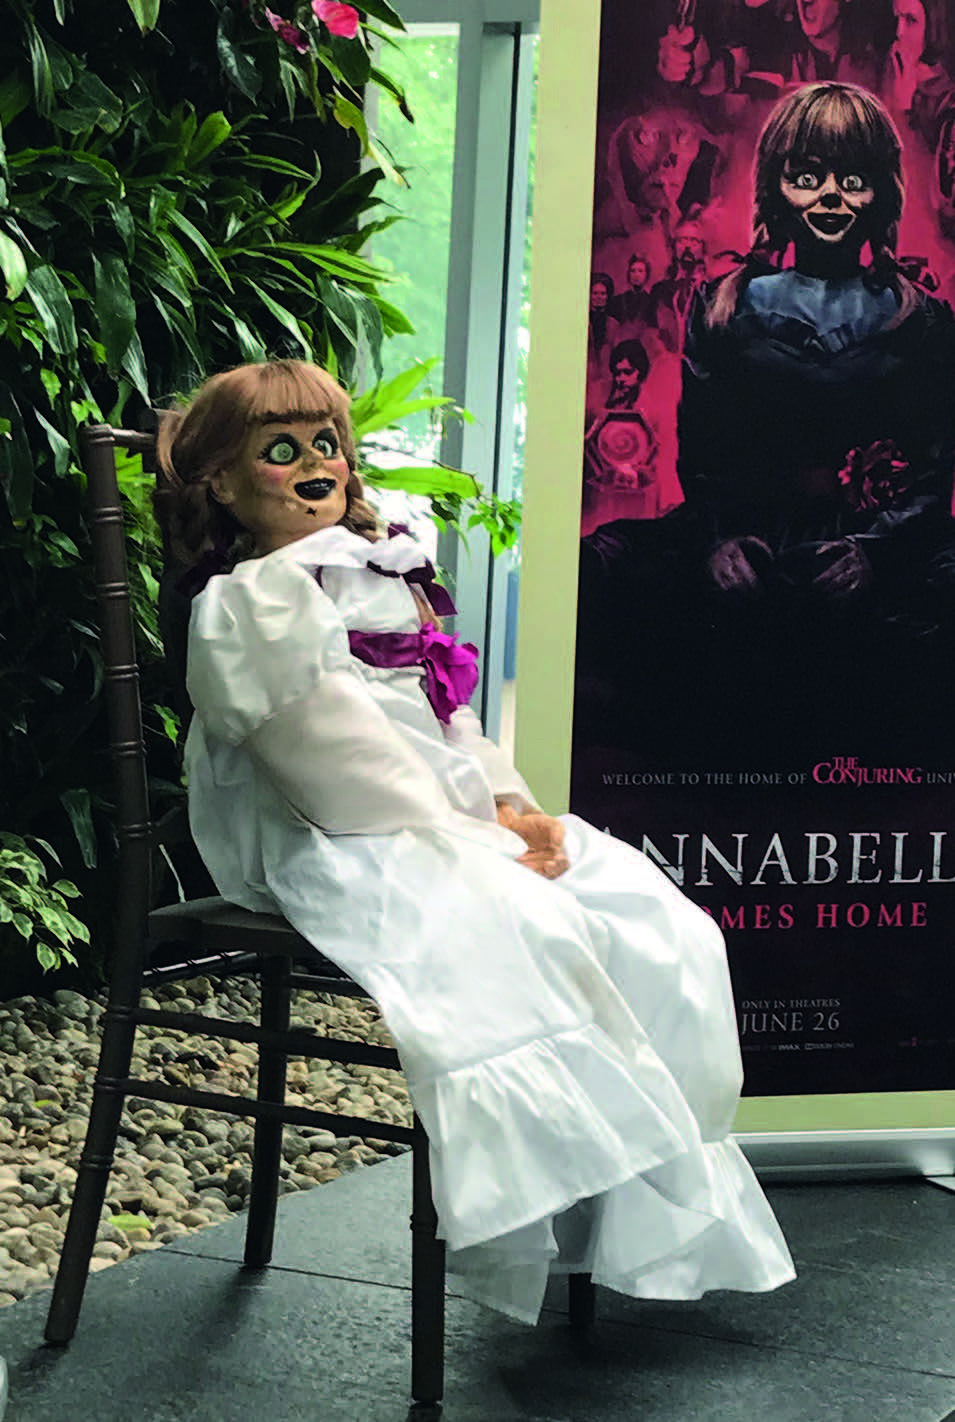 Abbildung 1: Annabelle Film doll